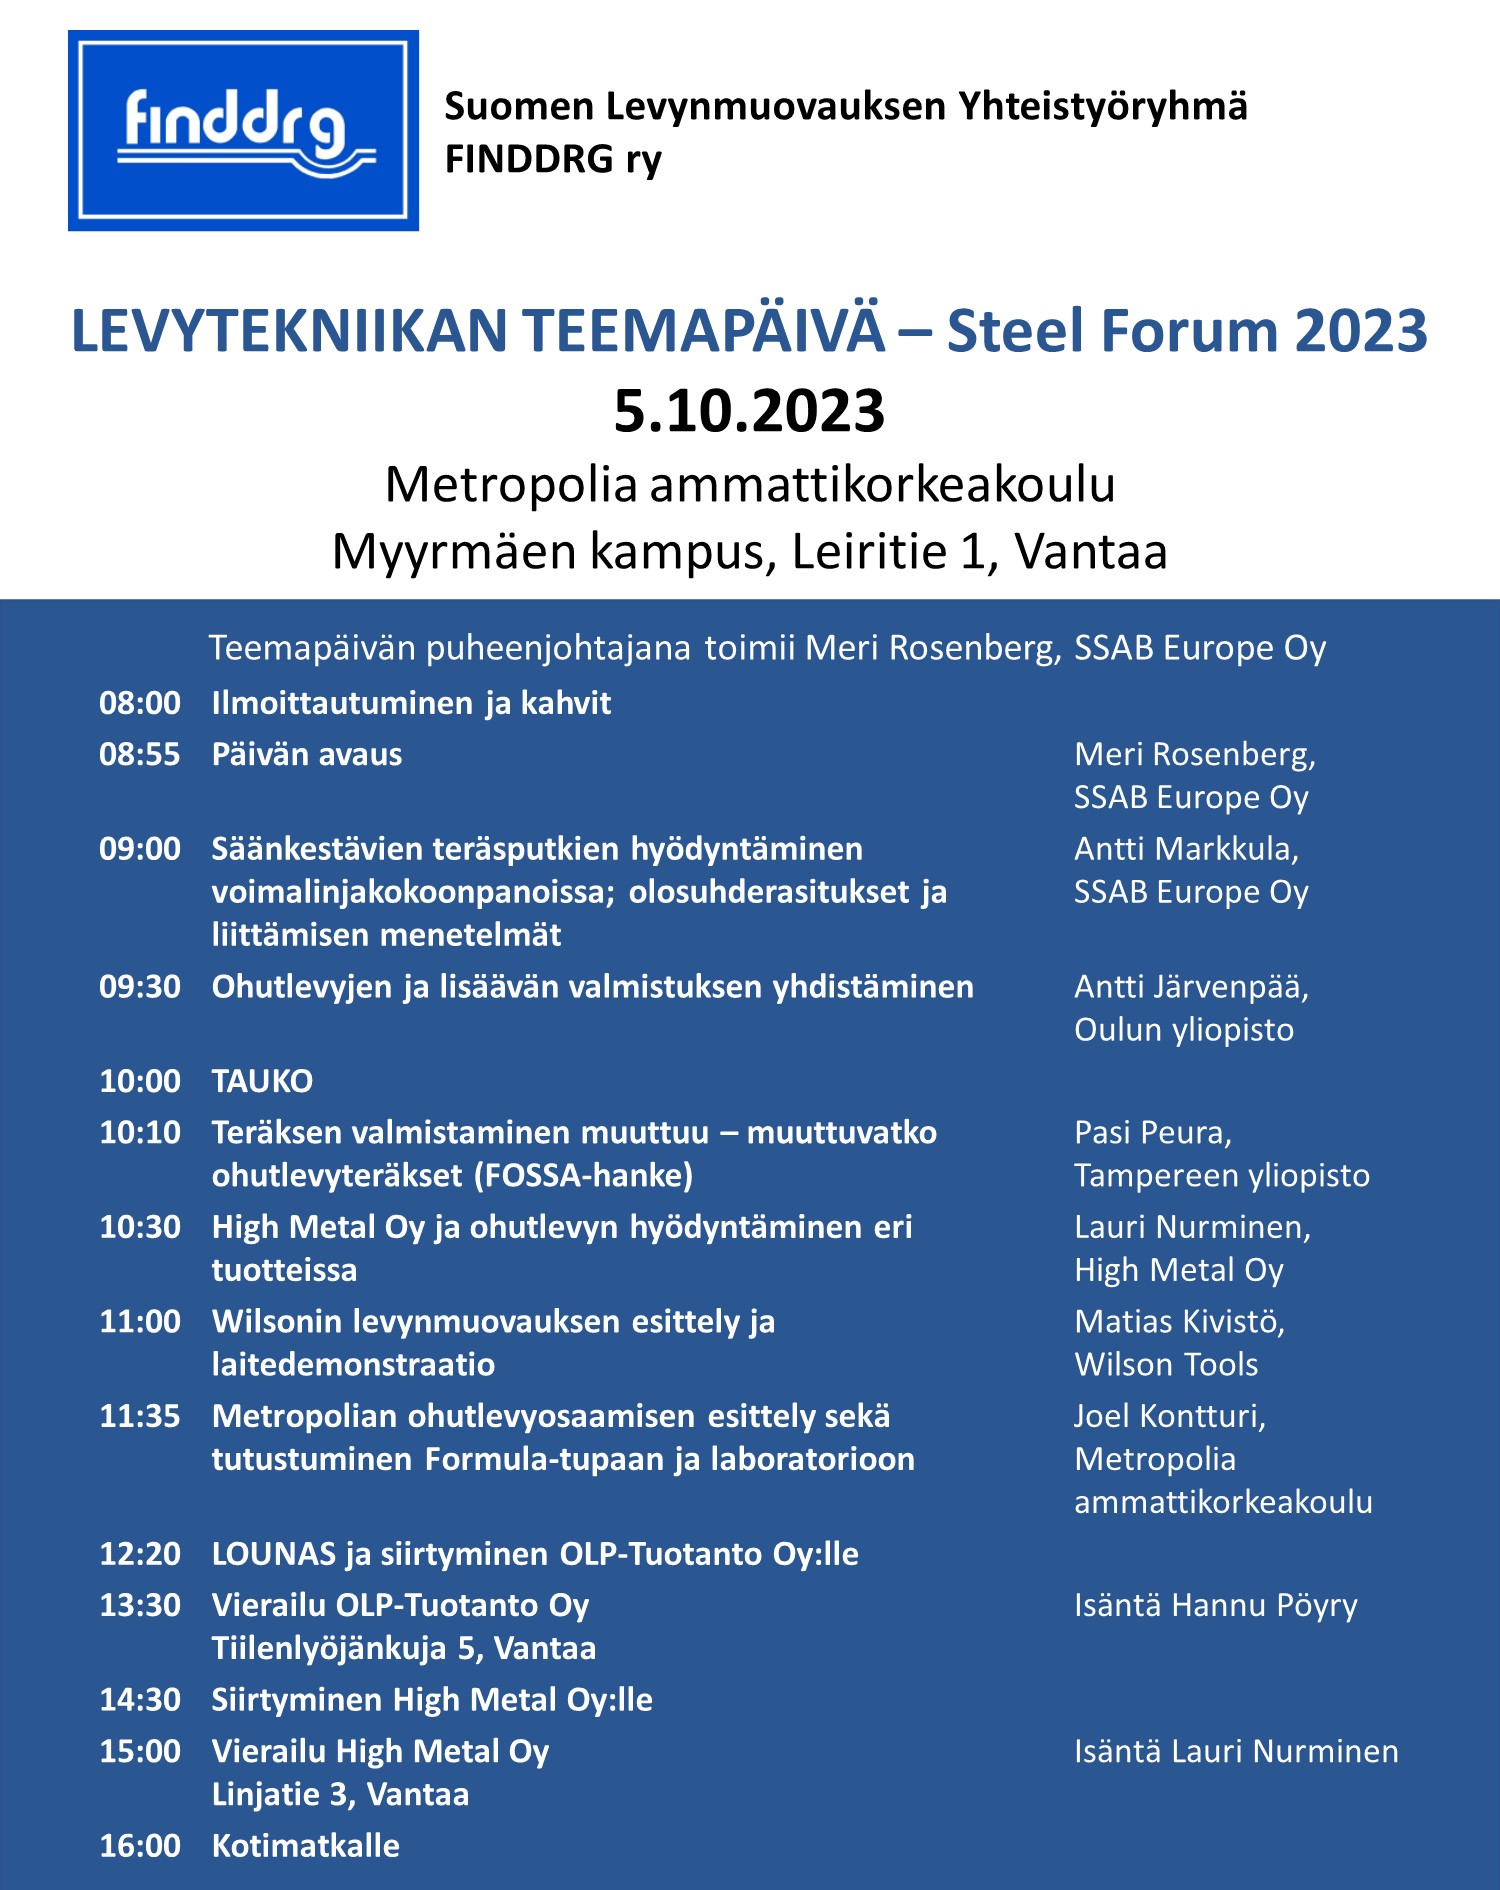 Finddrg Steel Forum 2023 ilmoittautumissivulle